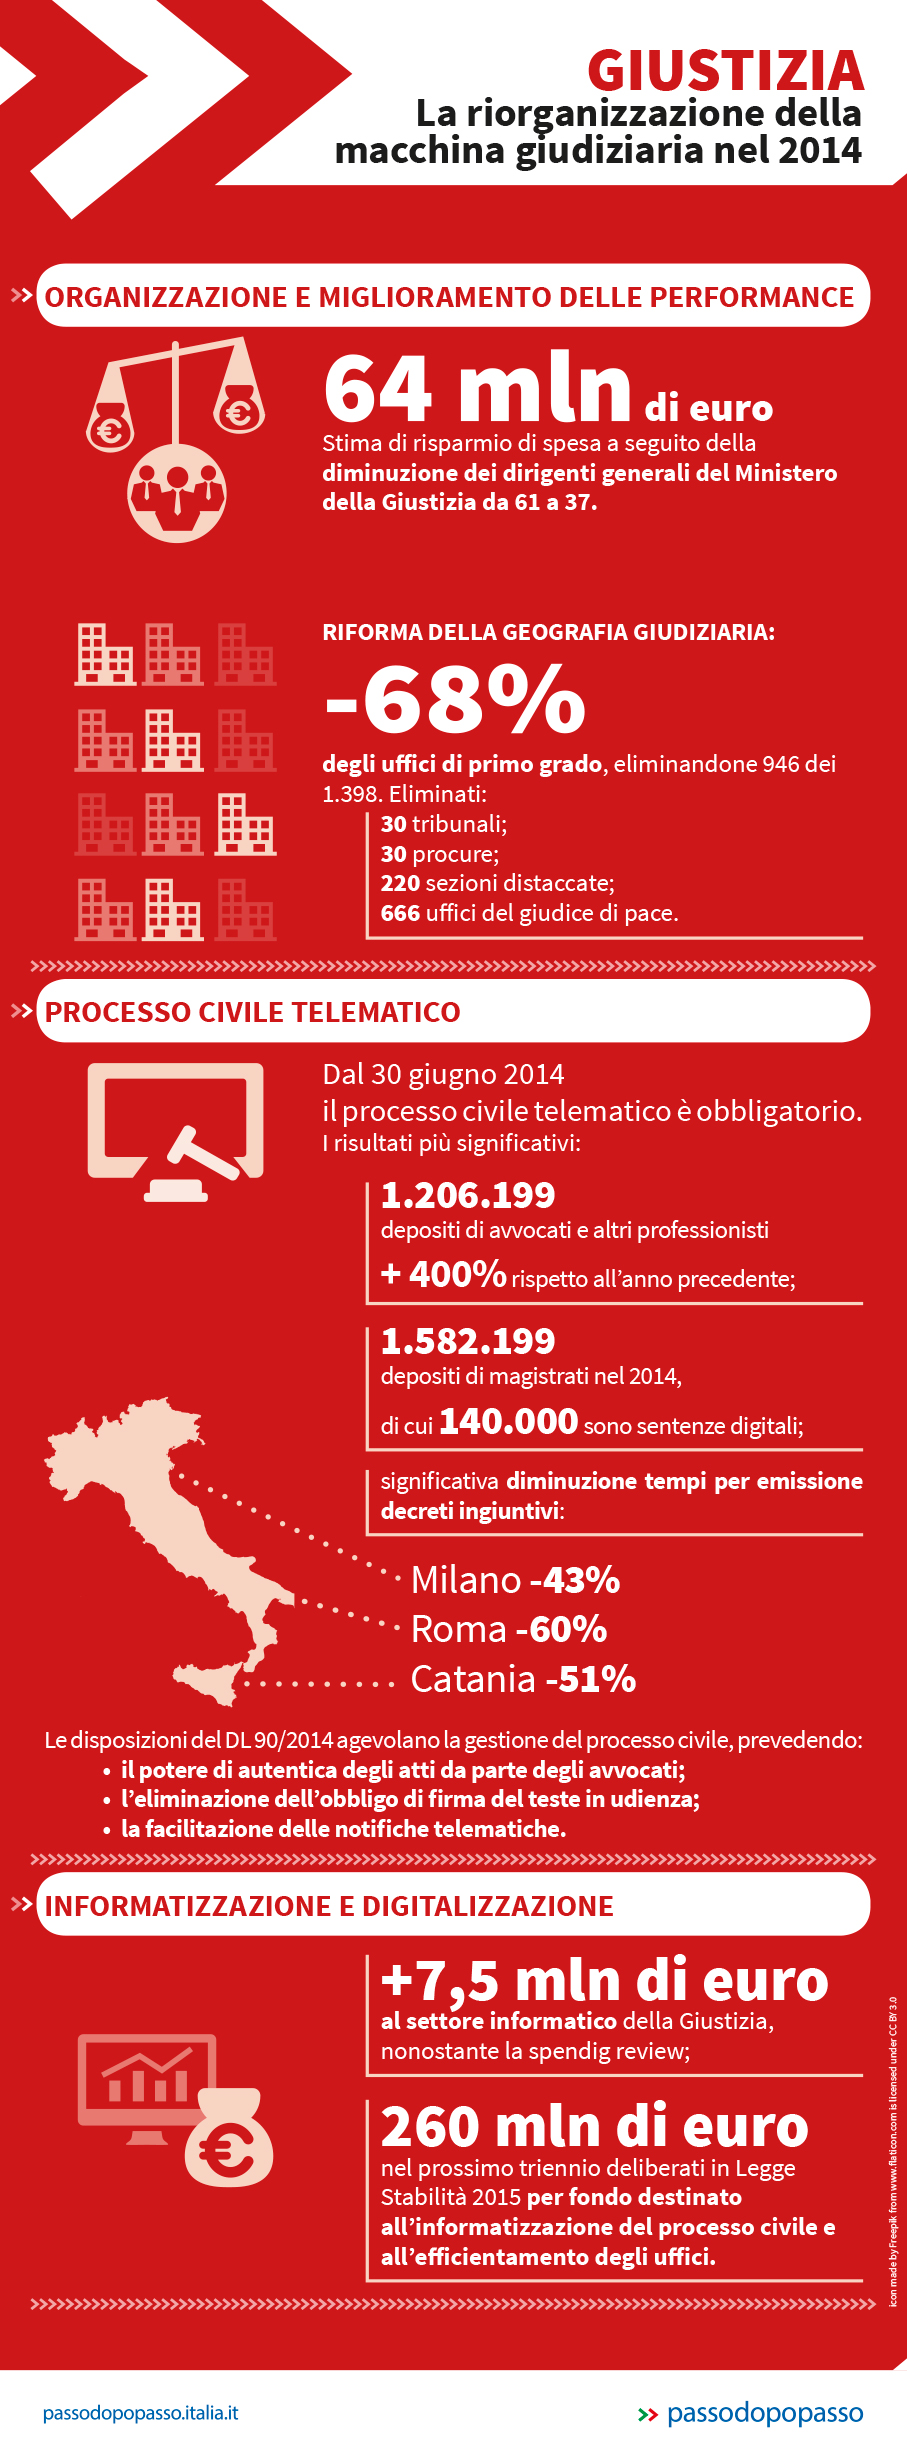 Infografica: La situazione della giustizia in Italia